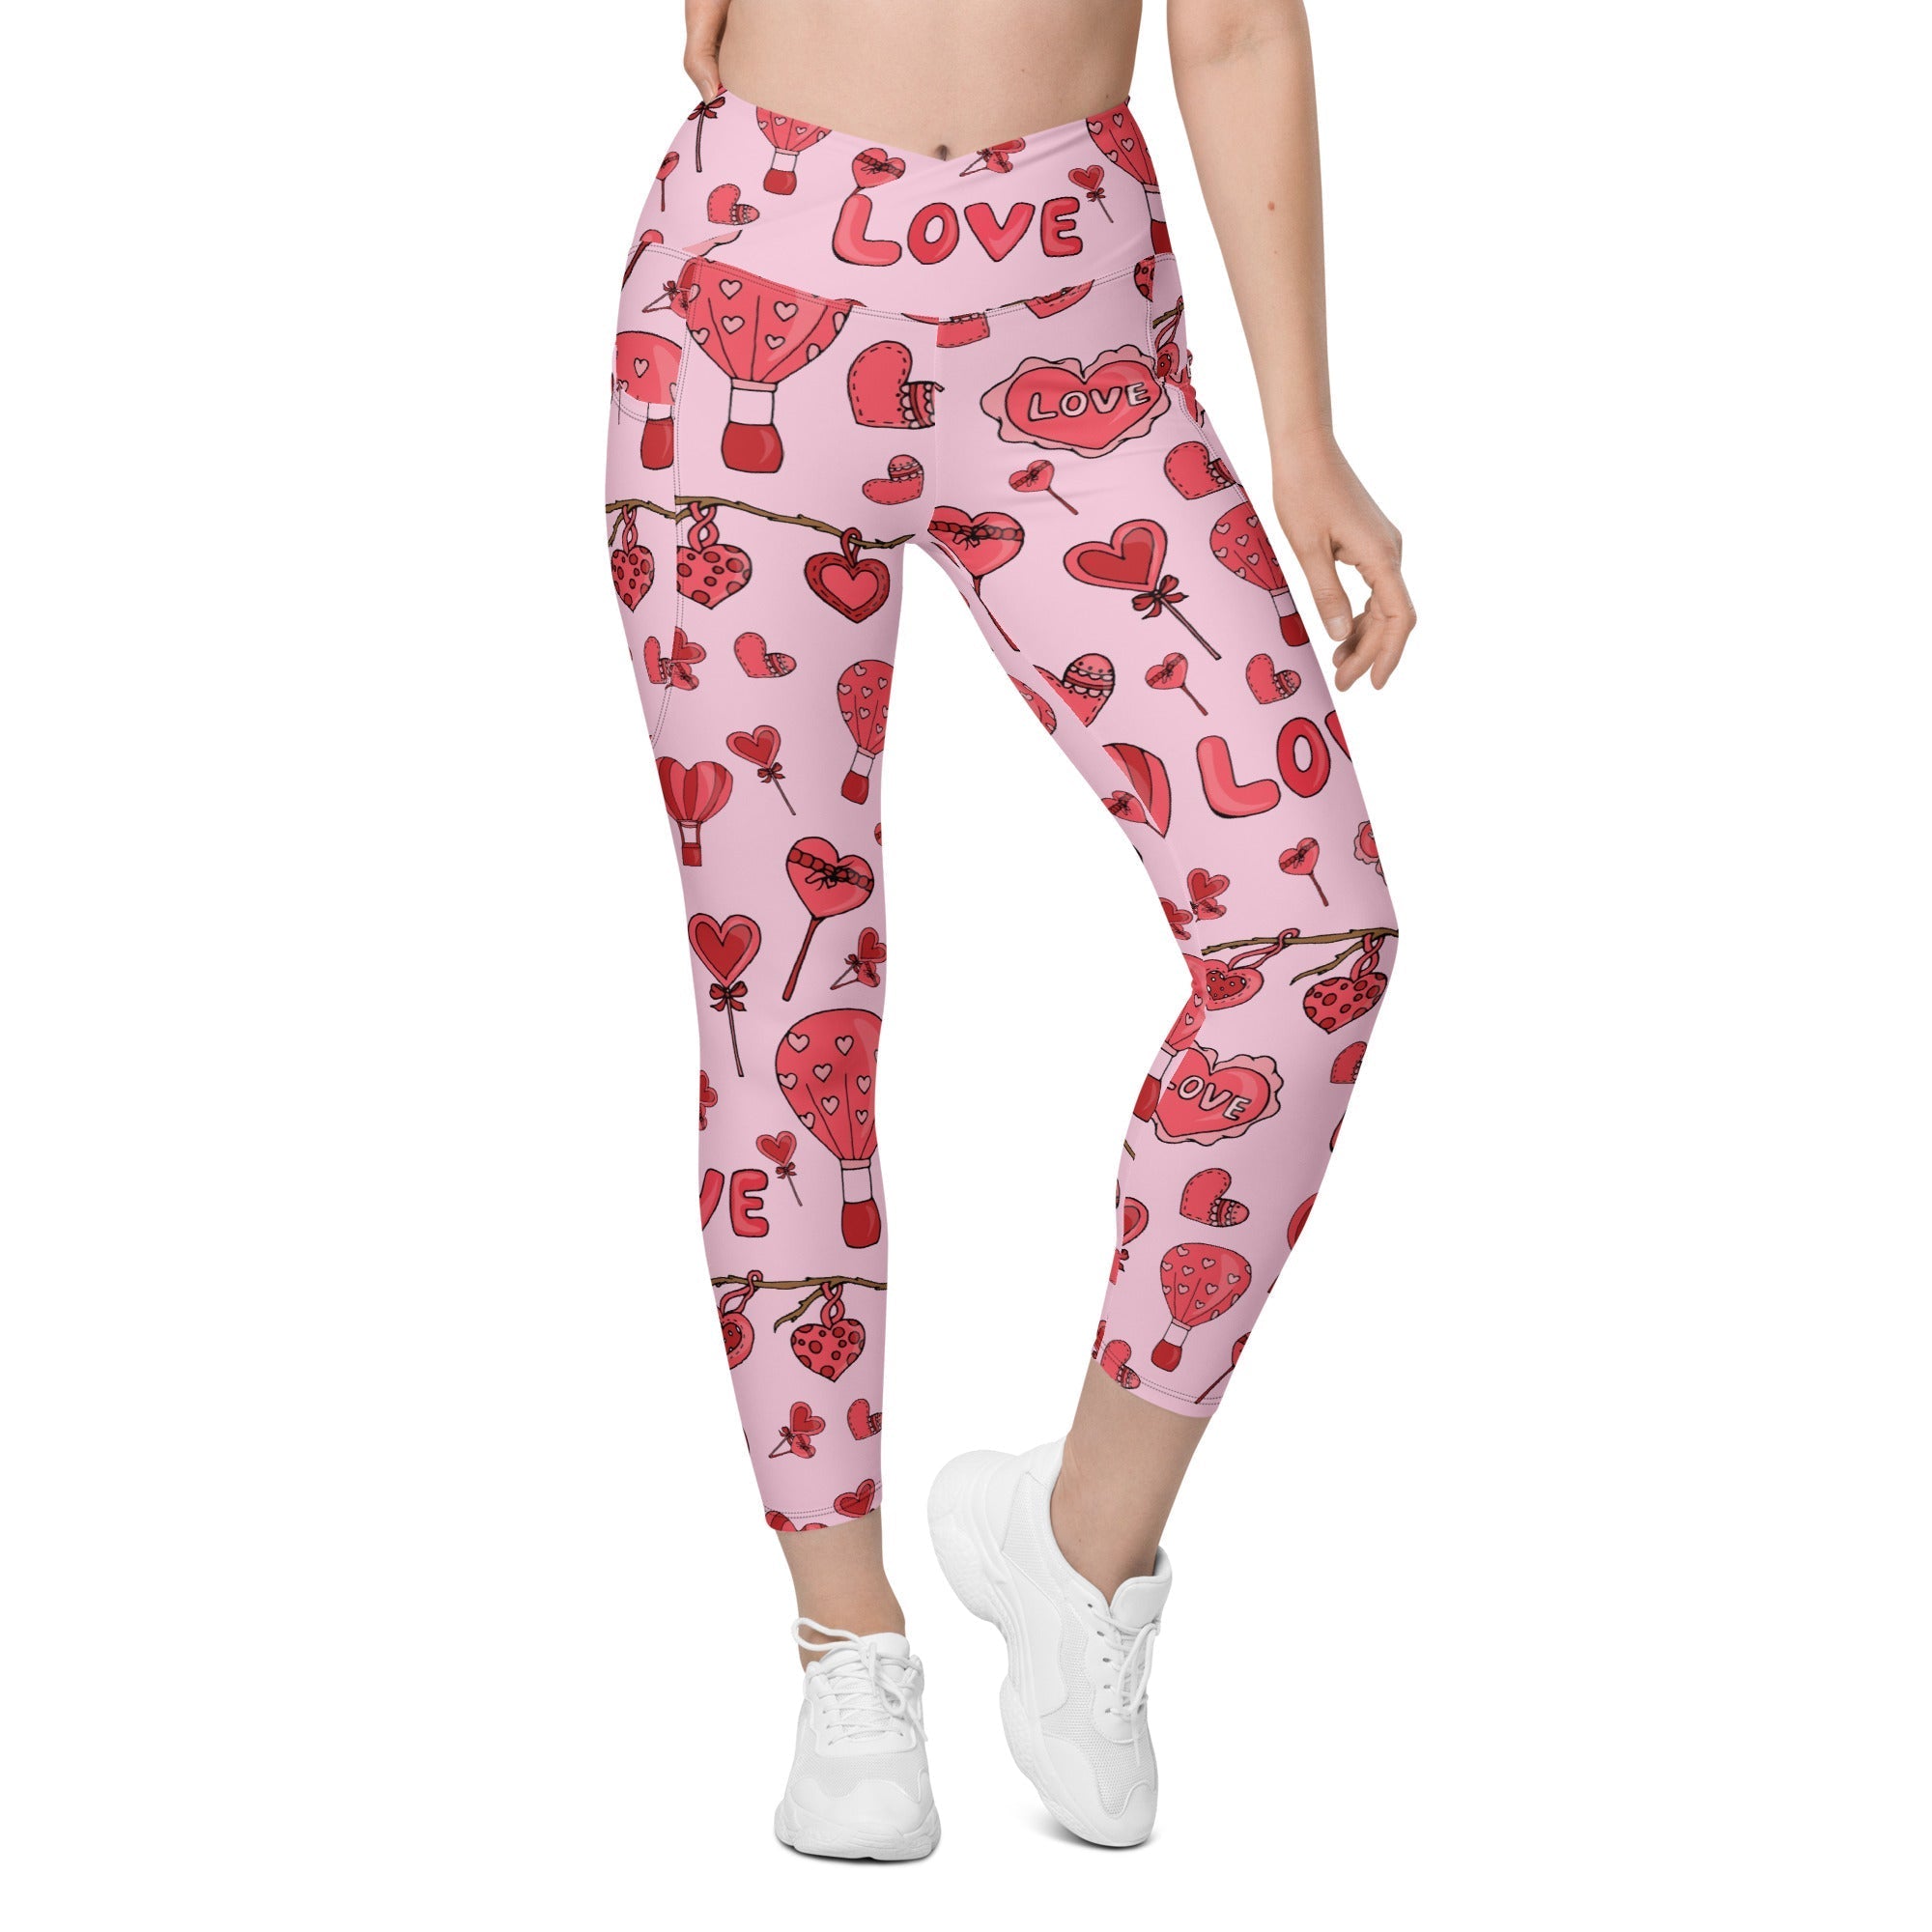 http://fiercepulse.com/cdn/shop/products/pink-love-crossover-leggings-with-pockets-fiercepulse-29792470597731.jpg?v=1672153086